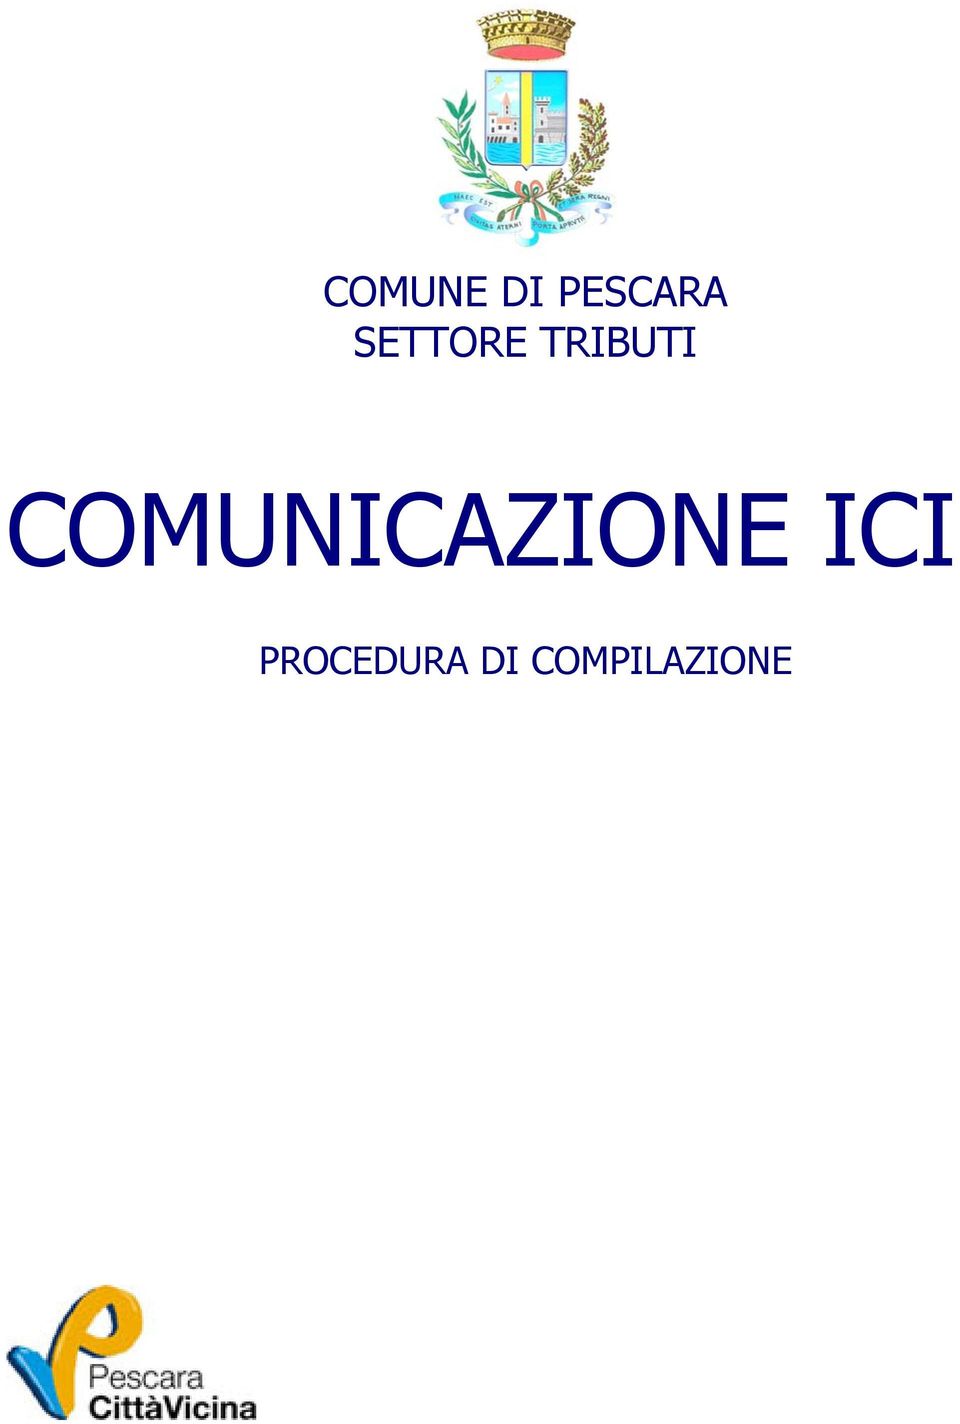 COMUNICAZIONE ICI